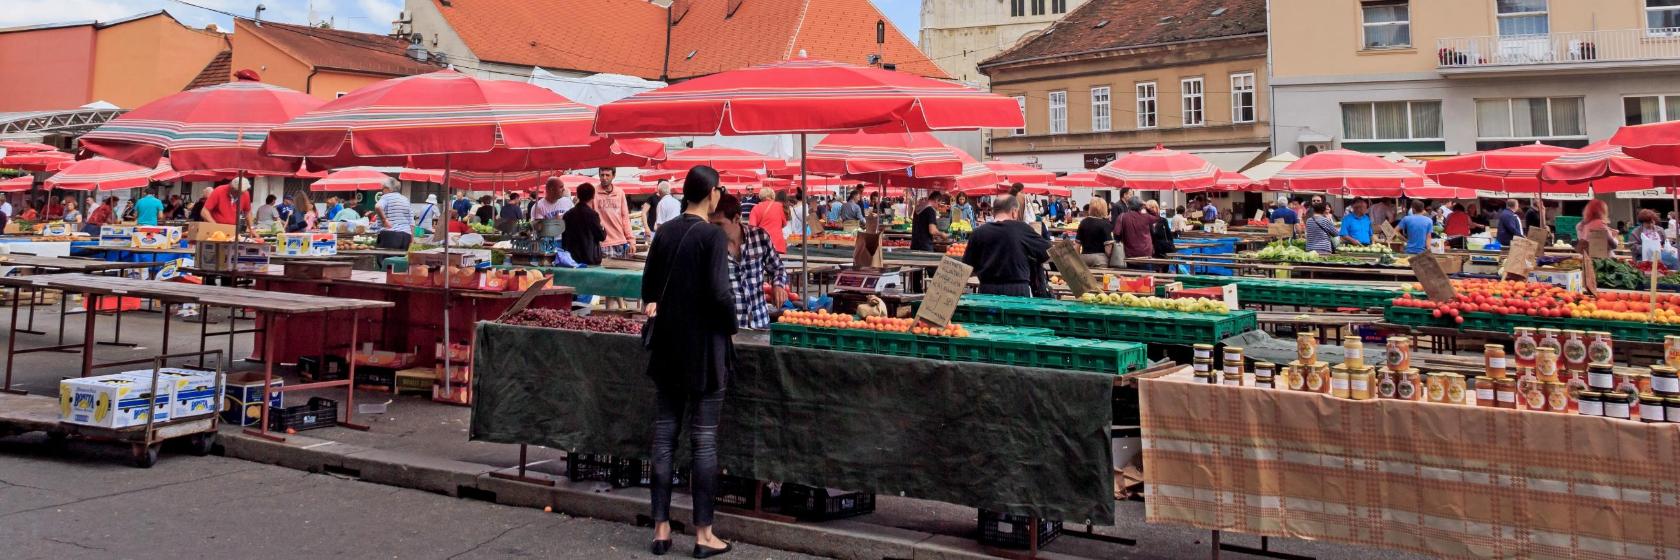 Dark markets croatia